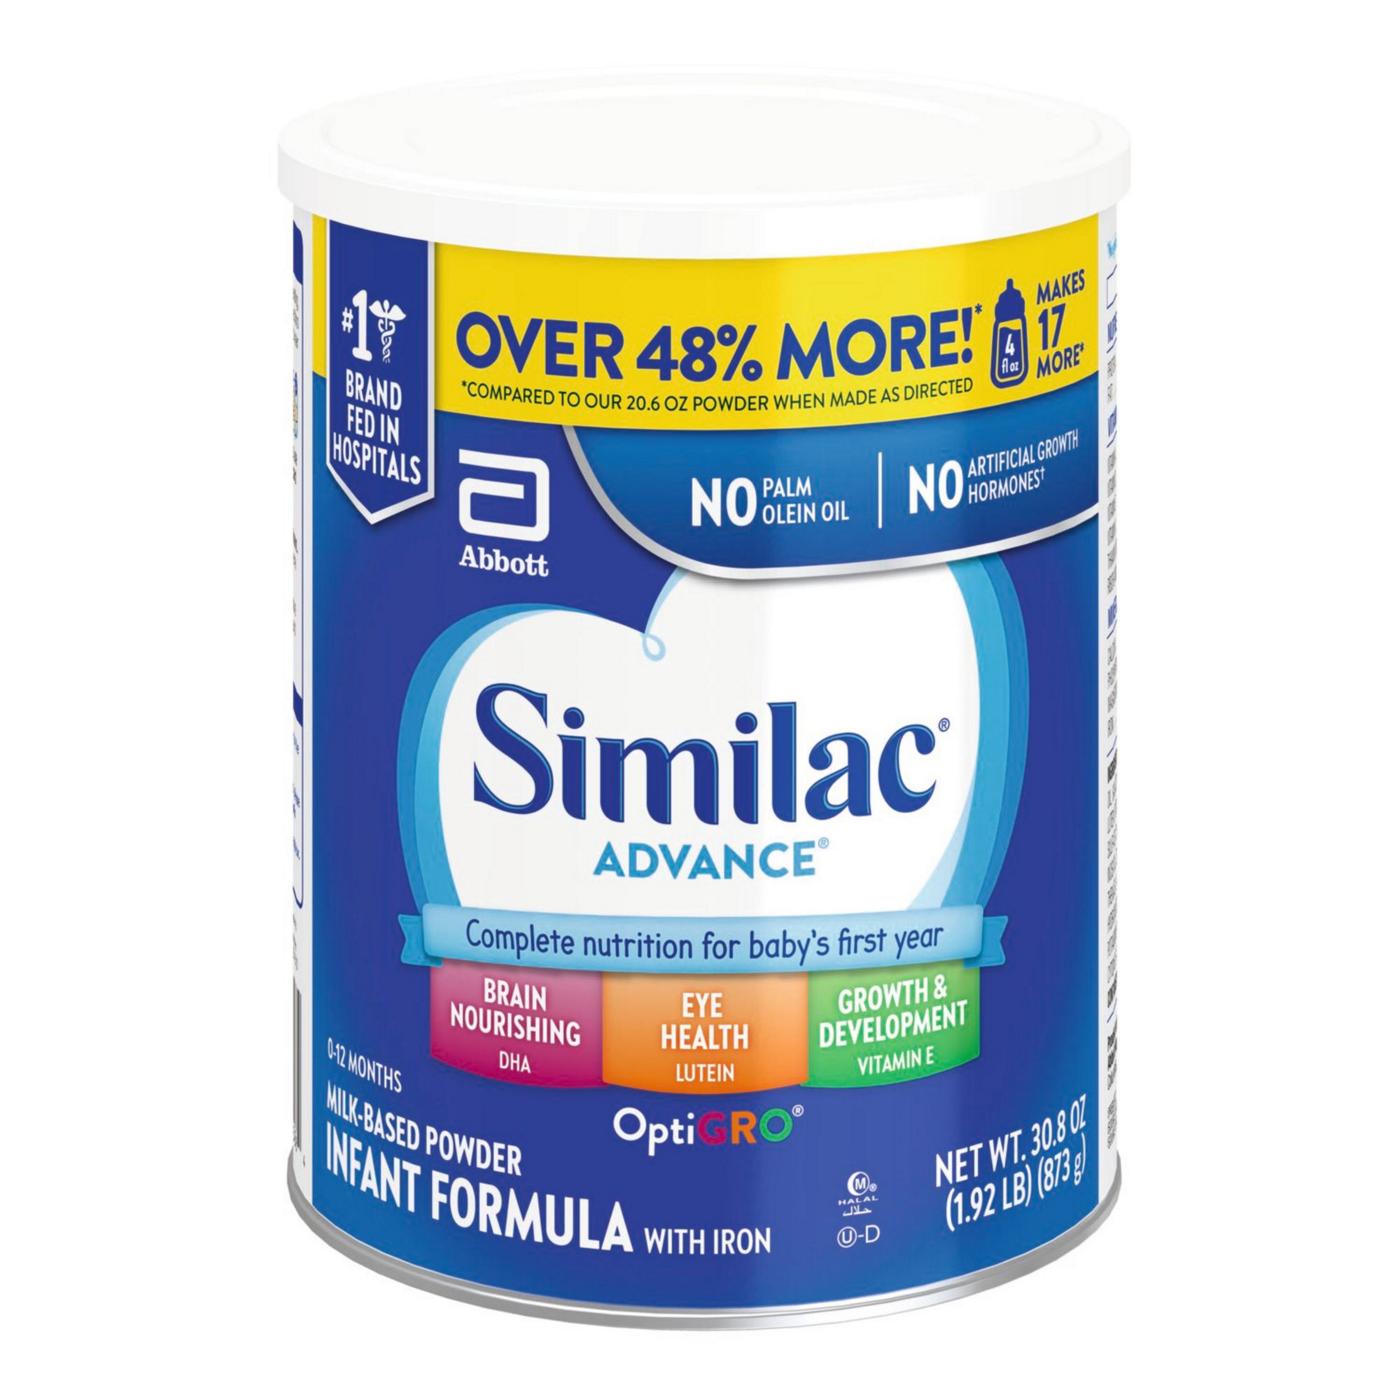 Similac Advance Milk-Based Powder Infant Formula with Iron; image 5 of 10